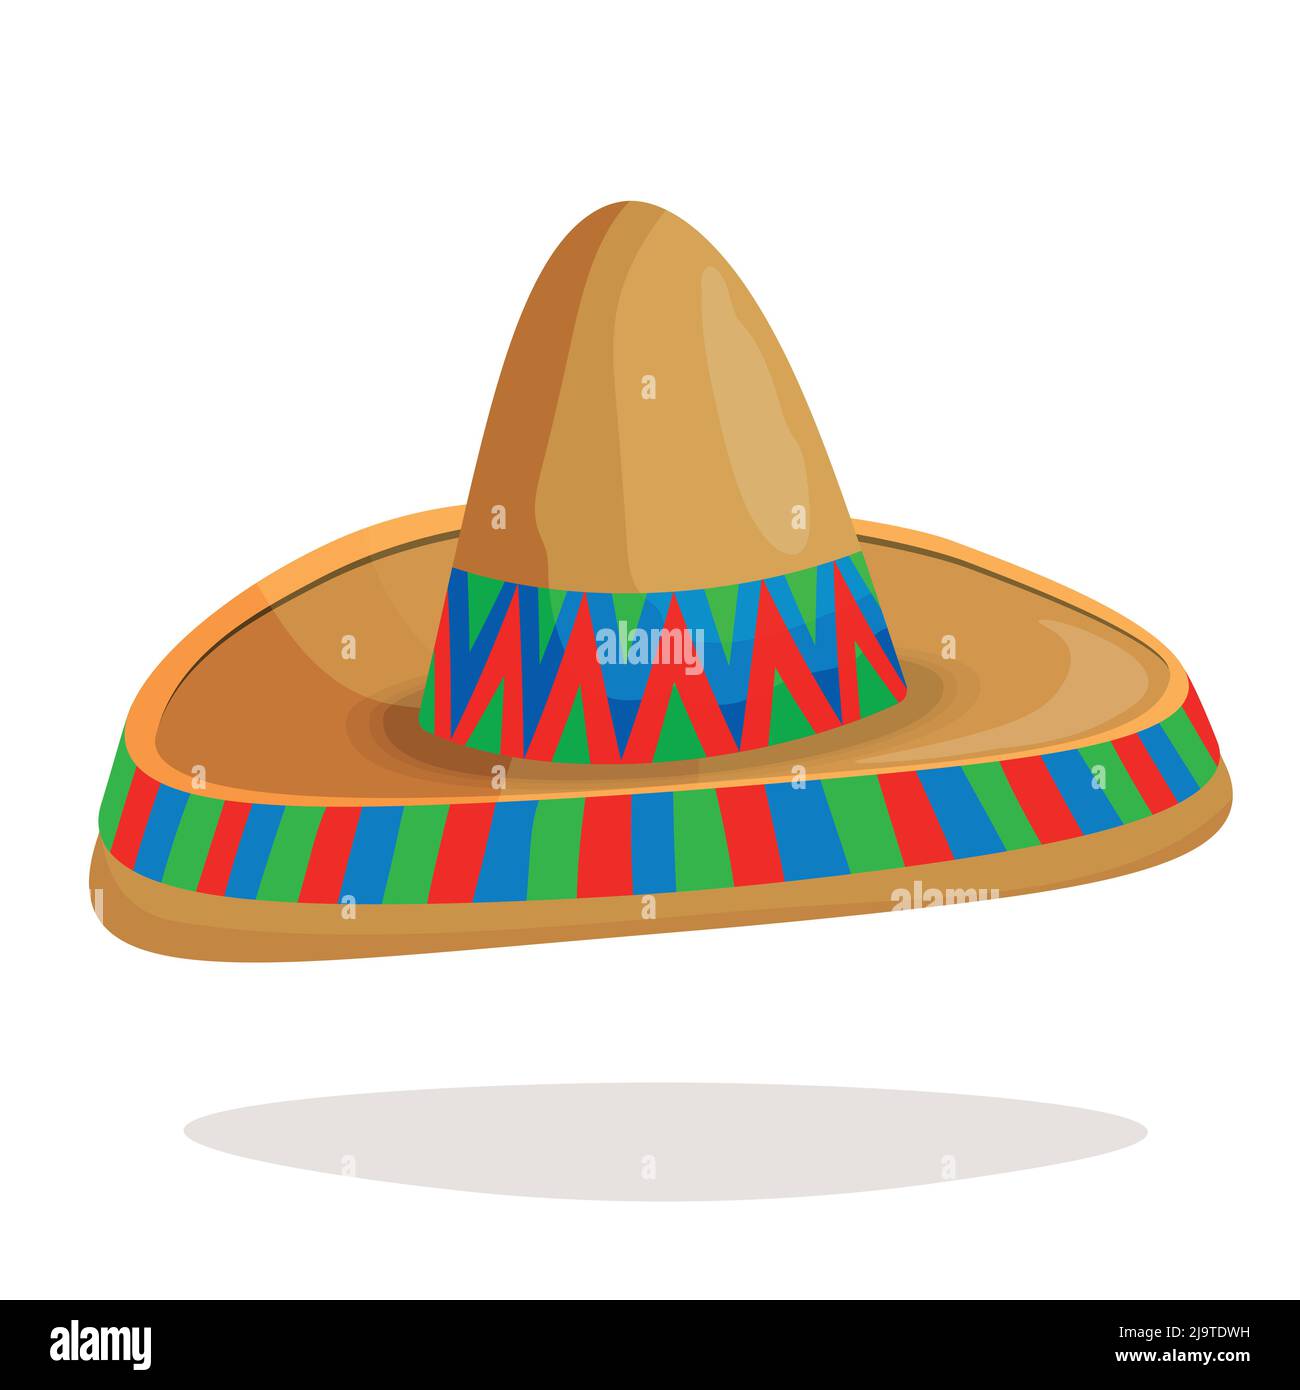 Những chiếc nón sombrero dân tộc Mexico cách điệu cô lập sẽ đưa bạn đến với một thế giới đầy mê hoặc và phiêu lưu mới mẻ. Hãy cùng ngắm nhìn những nét vẽ tinh tế và tỉ mỉ trên những chiếc nón này và cảm nhận niềm đam mê của các nghệ nhân Mexico.